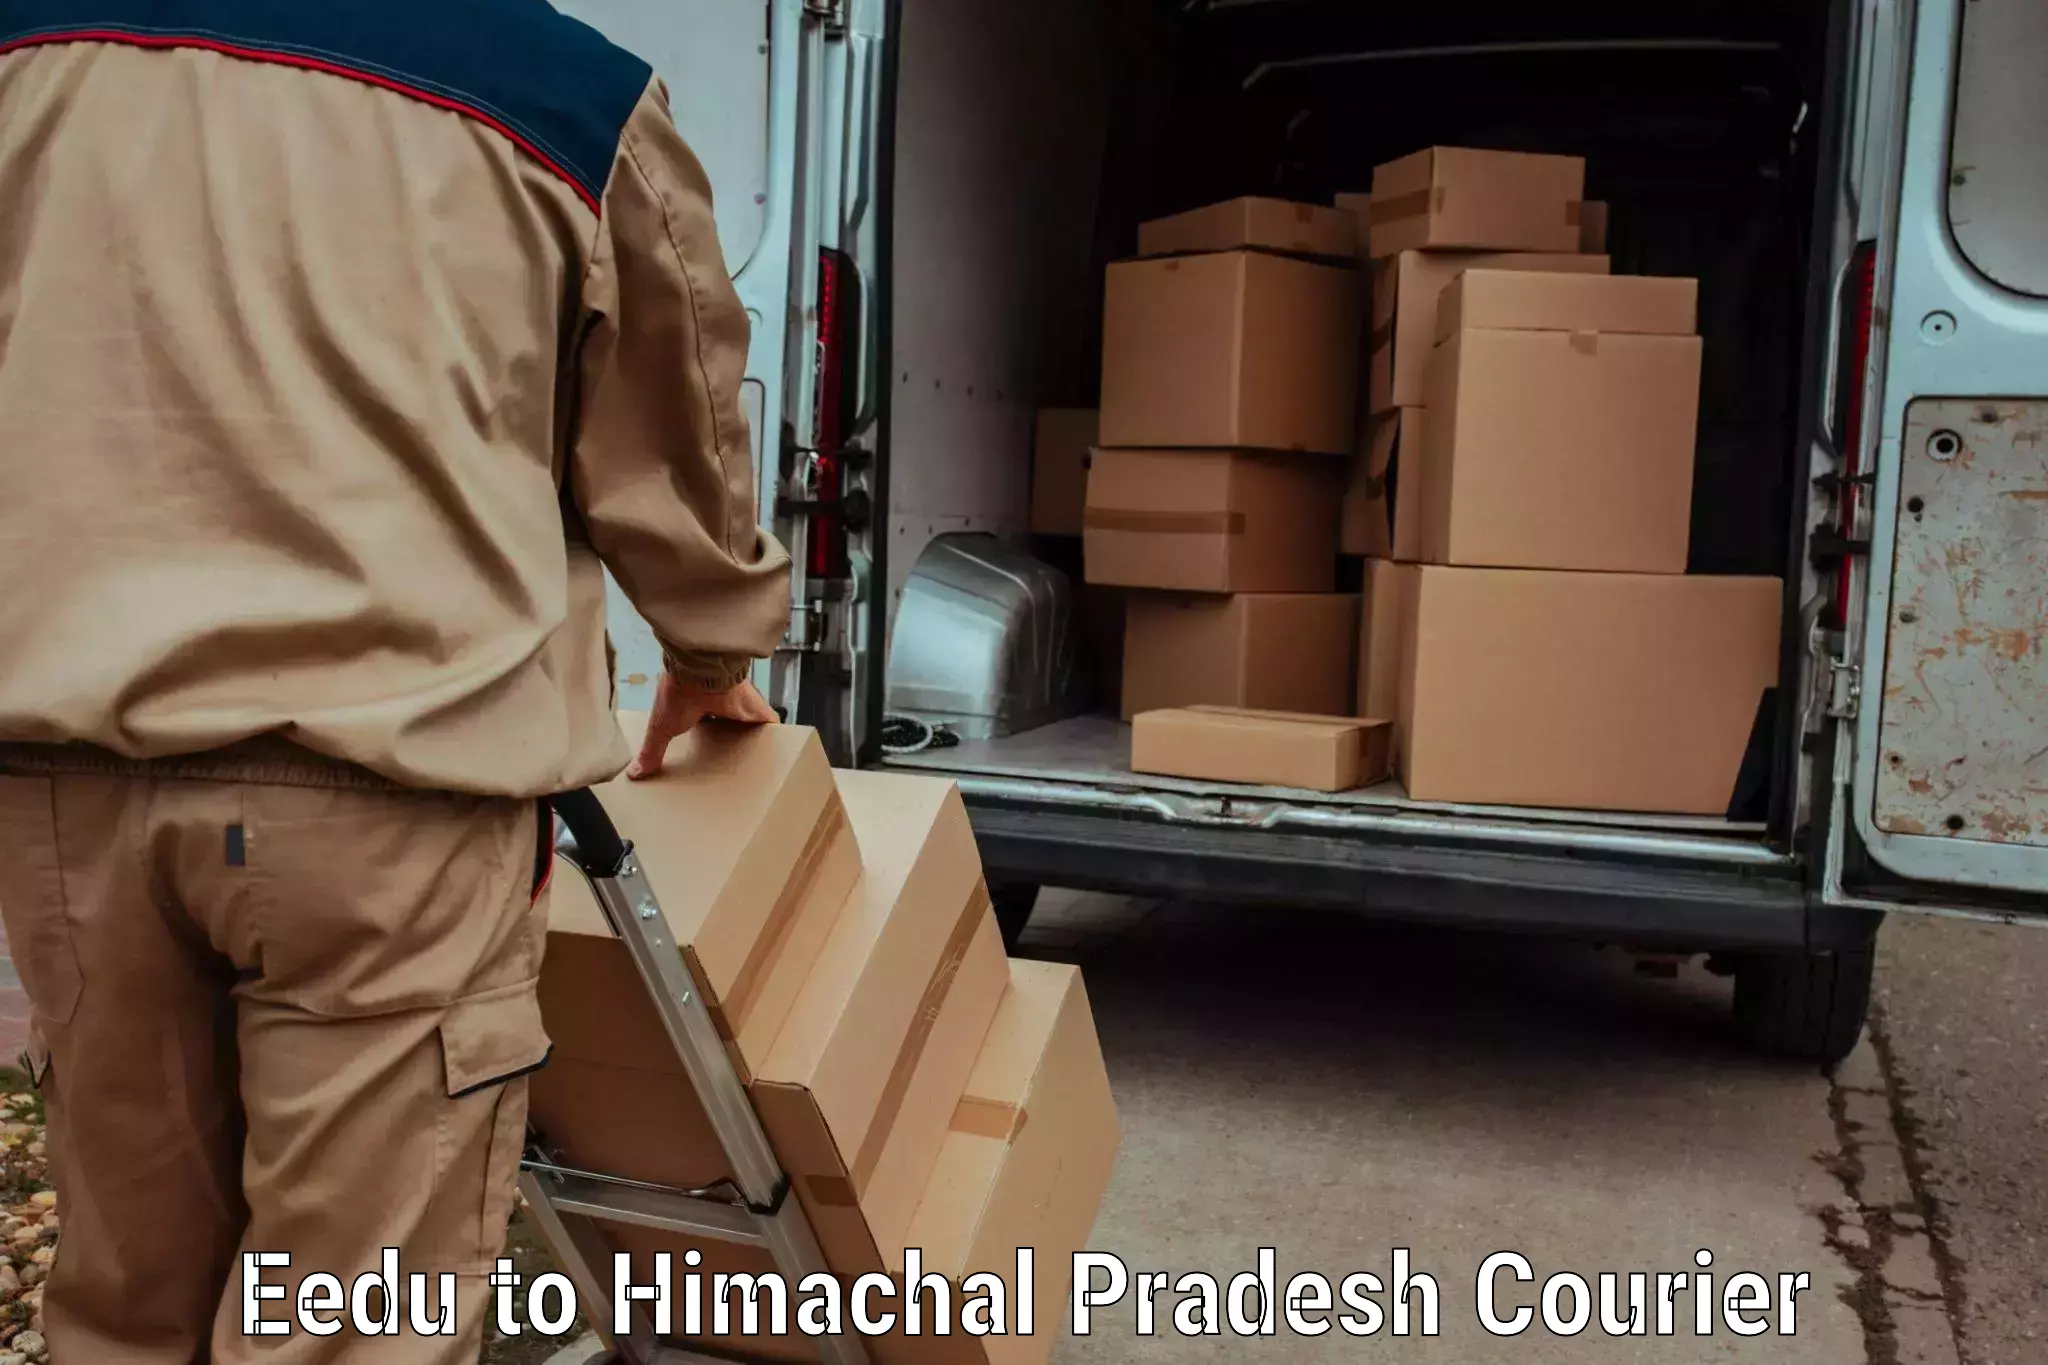 Discounted baggage transport in Eedu to Himachal Pradesh